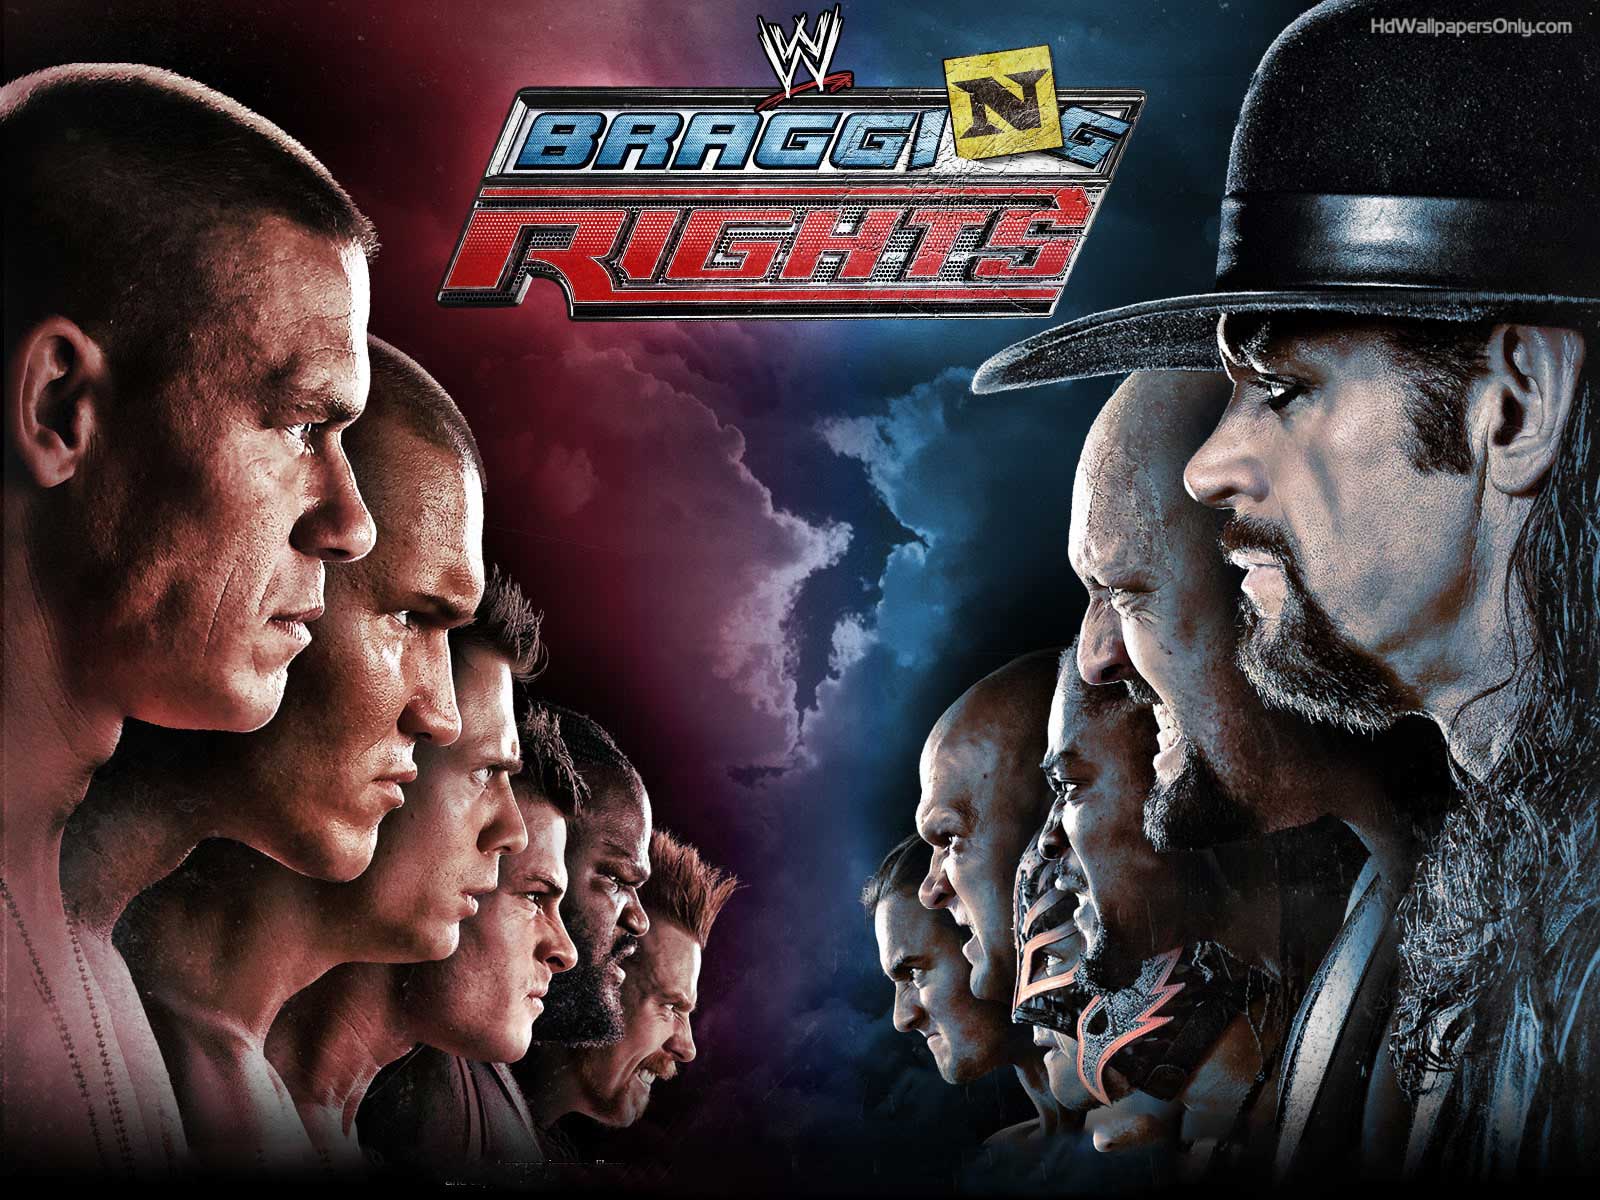 WWE wallpaper HD background download desktop iPhones Backgrounds